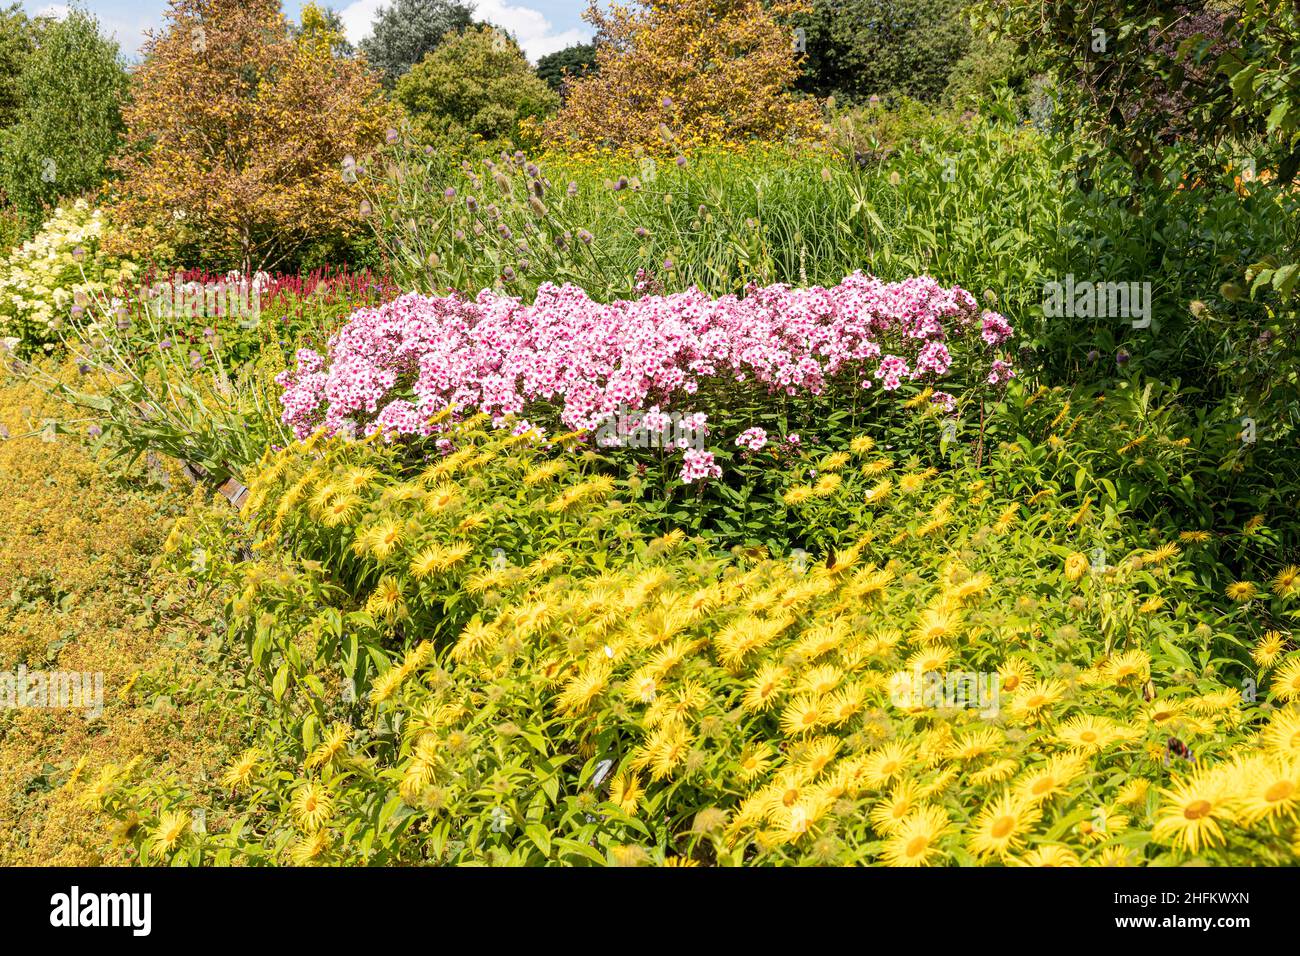 Eine Ausstellung gemischter Sommerblumen im Golden Acre Park, Leeds, West Yorkshire, Großbritannien Stockfoto